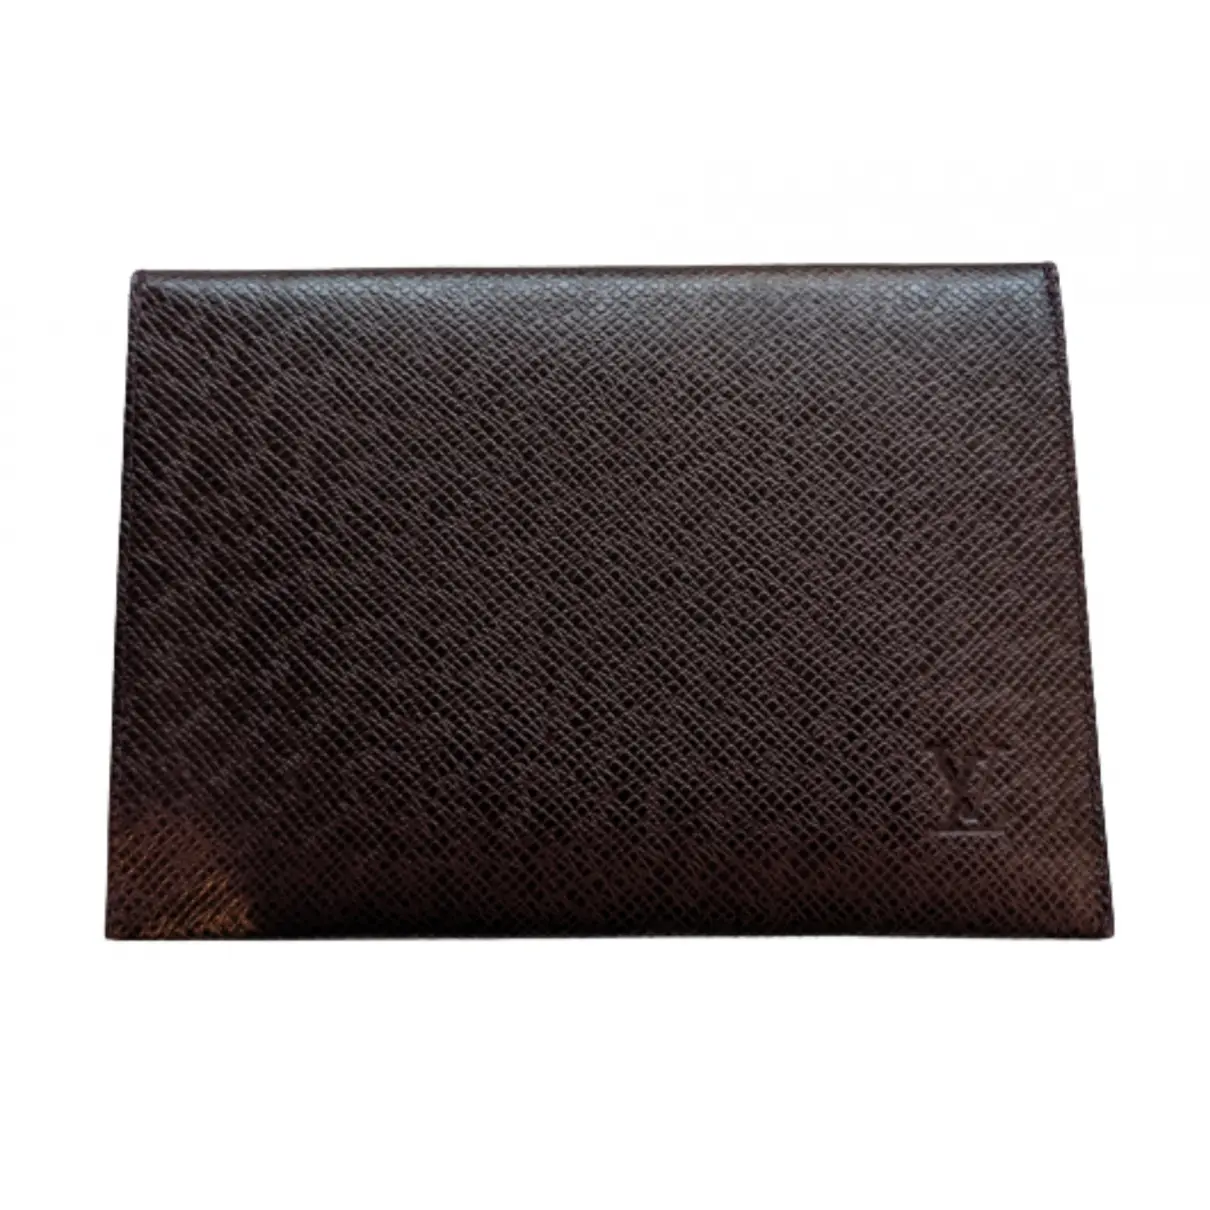 Buy Louis Vuitton Leather purse online